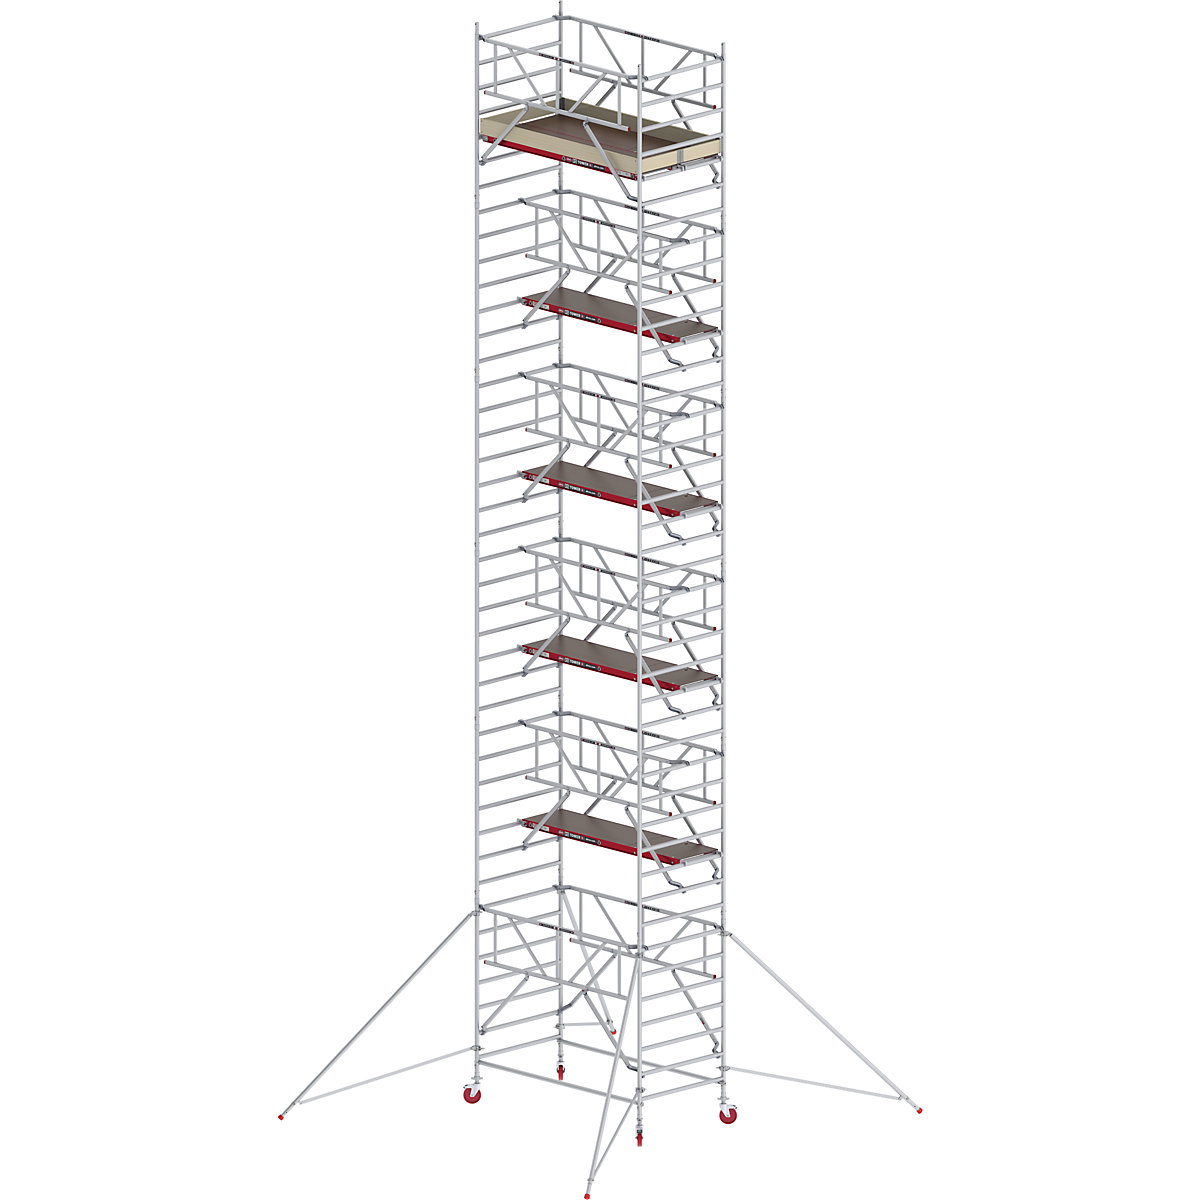 Trabattello mobile RS TOWER 42 largo con Safe-Quick® – Altrex, piattaforma in legno, lunghezza 1,85 m, altezza di lavoro 13,2 m-2